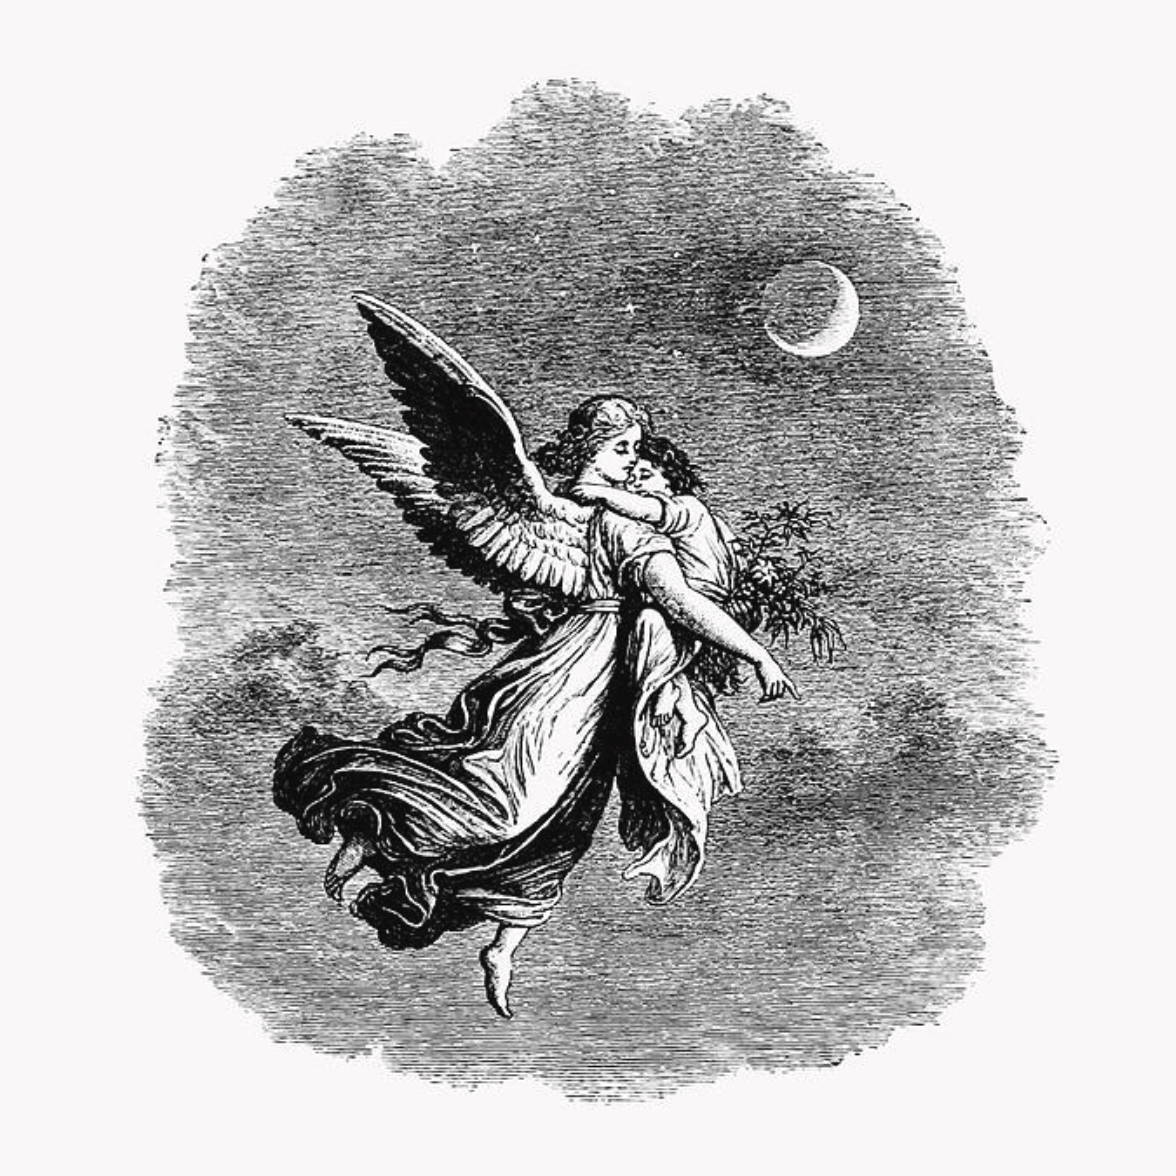 Vintage Angel and Child Illustration